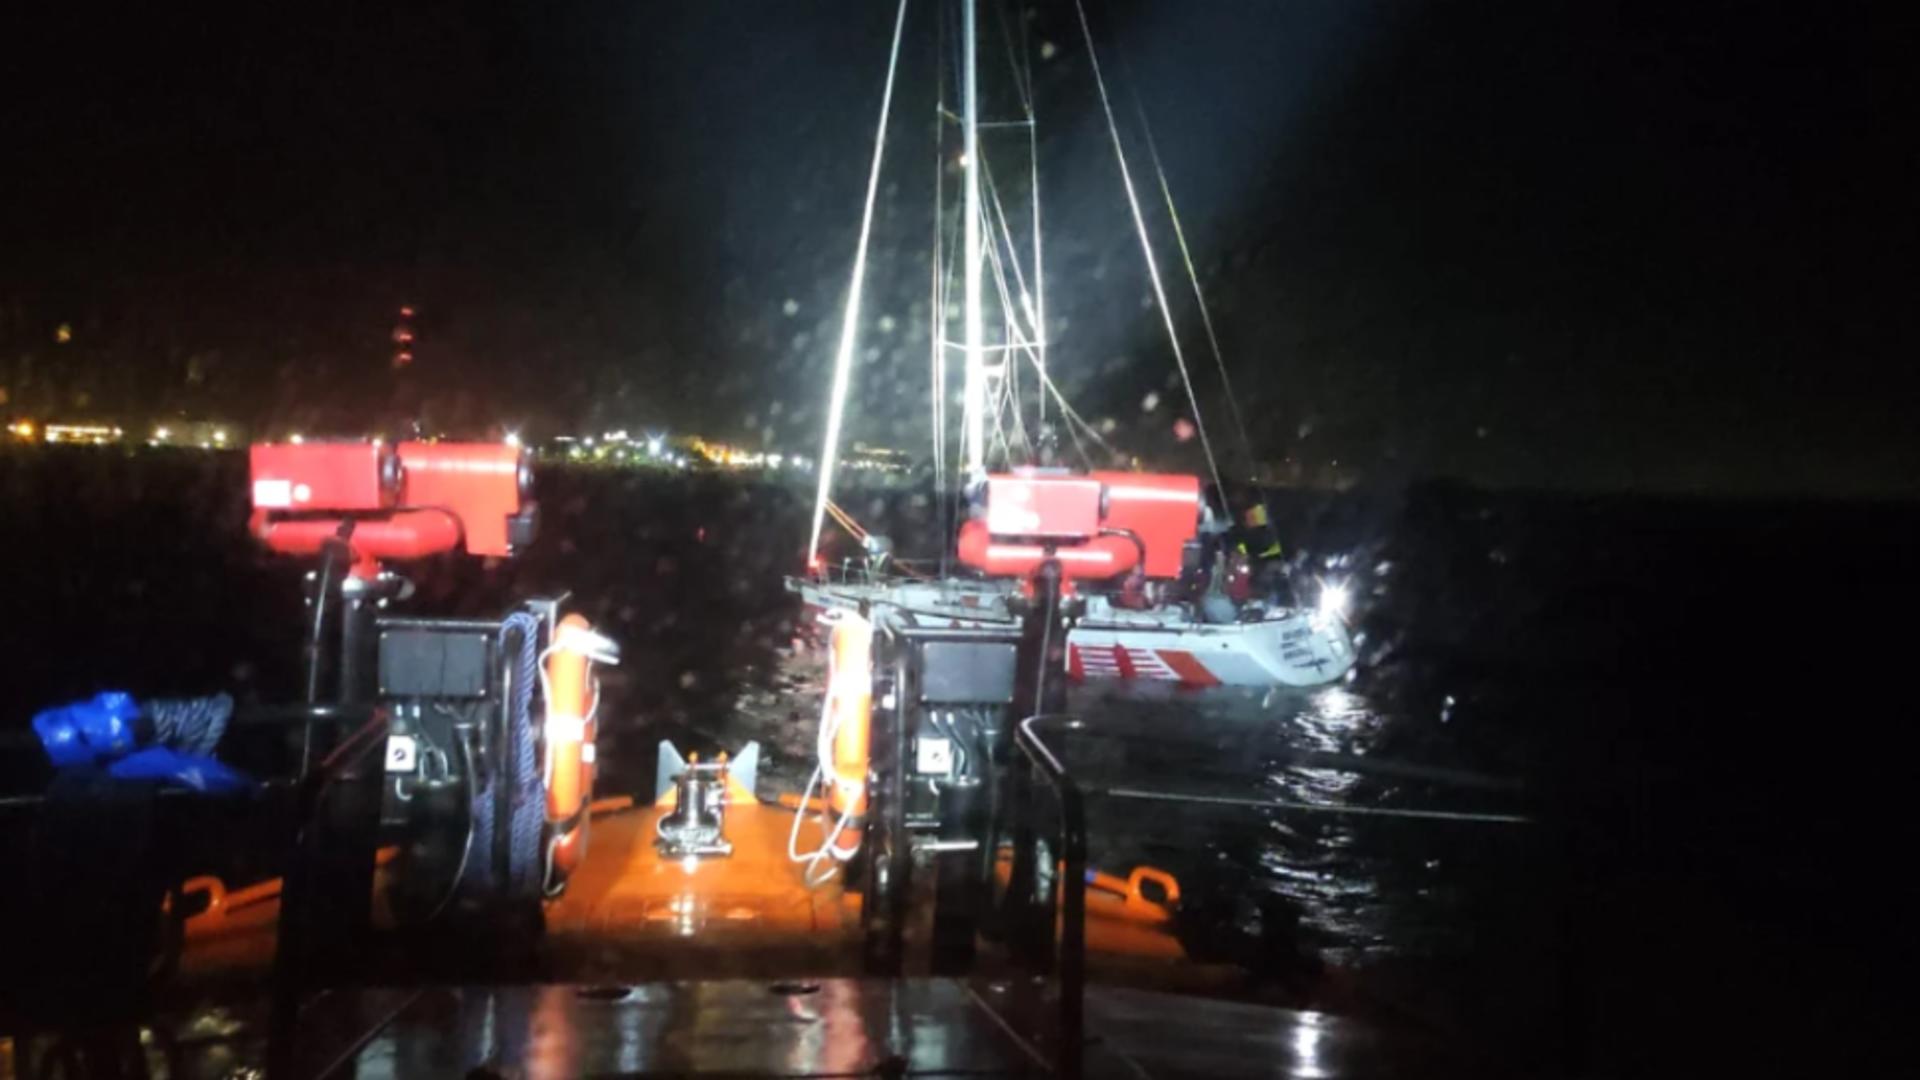 Un velier cu 5 persoane la bord, în pericol de scufundare în Marea Neagră! Intervenție contracronometru în condiții de vreme extremă